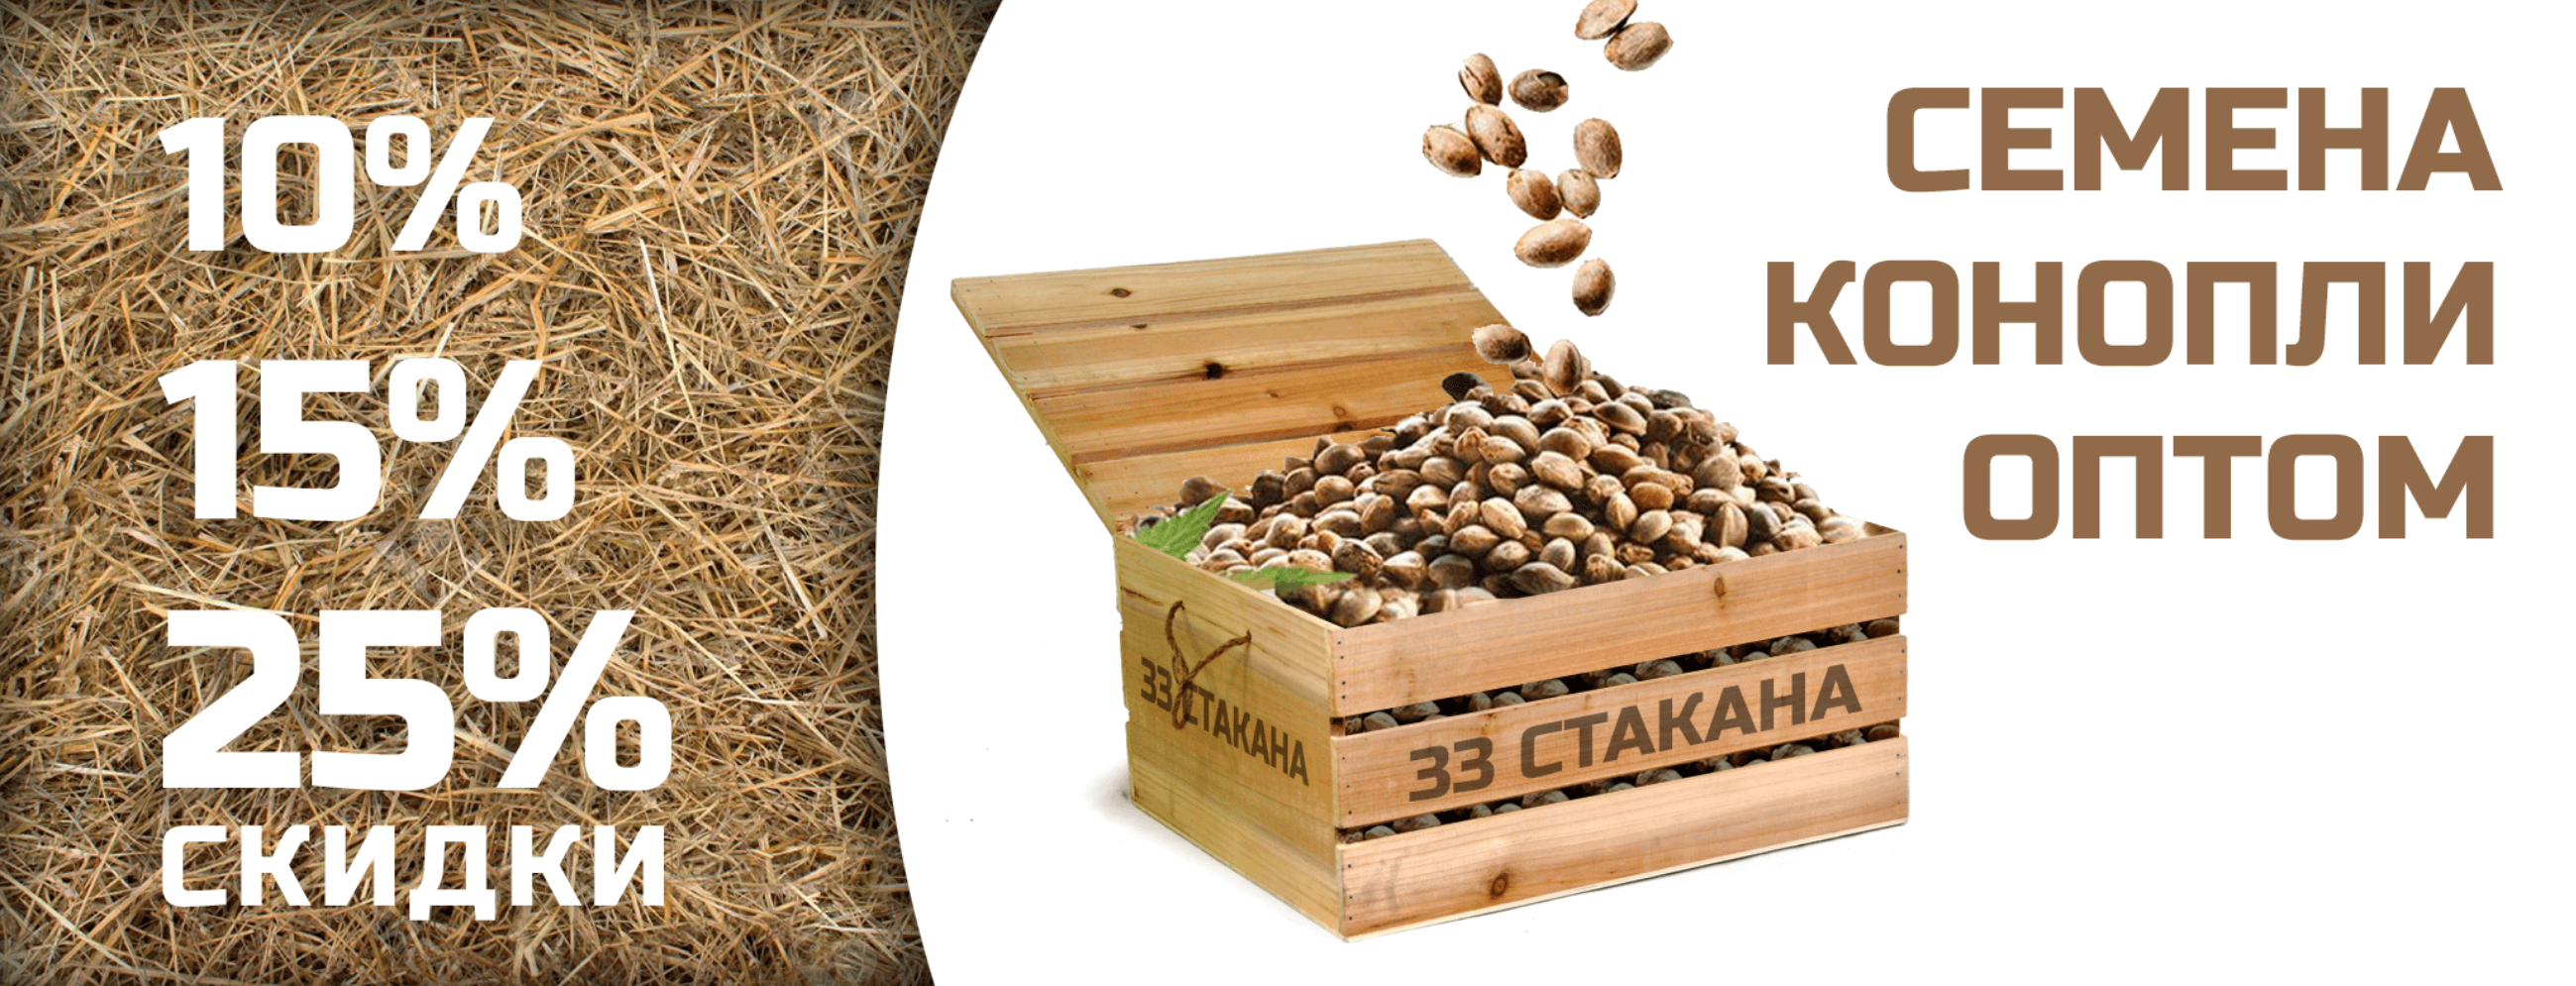 Купить оптом семена конопли в украине медведи и марихуана скачать ролик